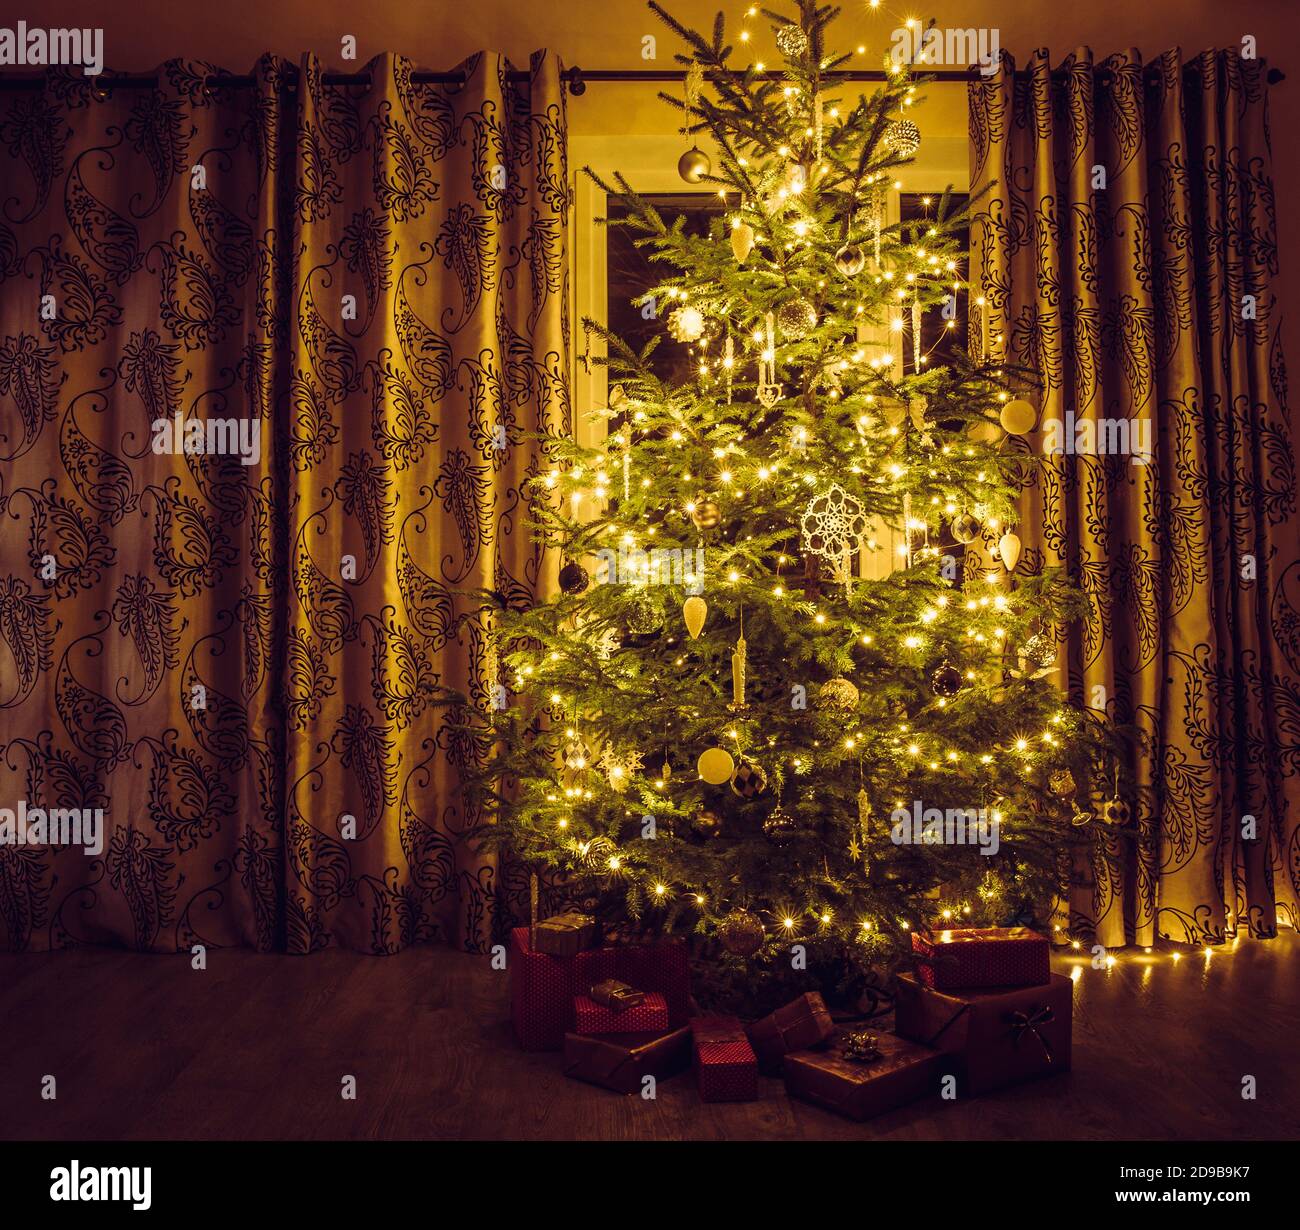 Sapin de Noël avec guirlande lumineuse jaune chaude, glaçons blancs et  ornements en forme de flocons de neige. Des cadeaux emballés en rouge sous  l'arbre Photo Stock - Alamy